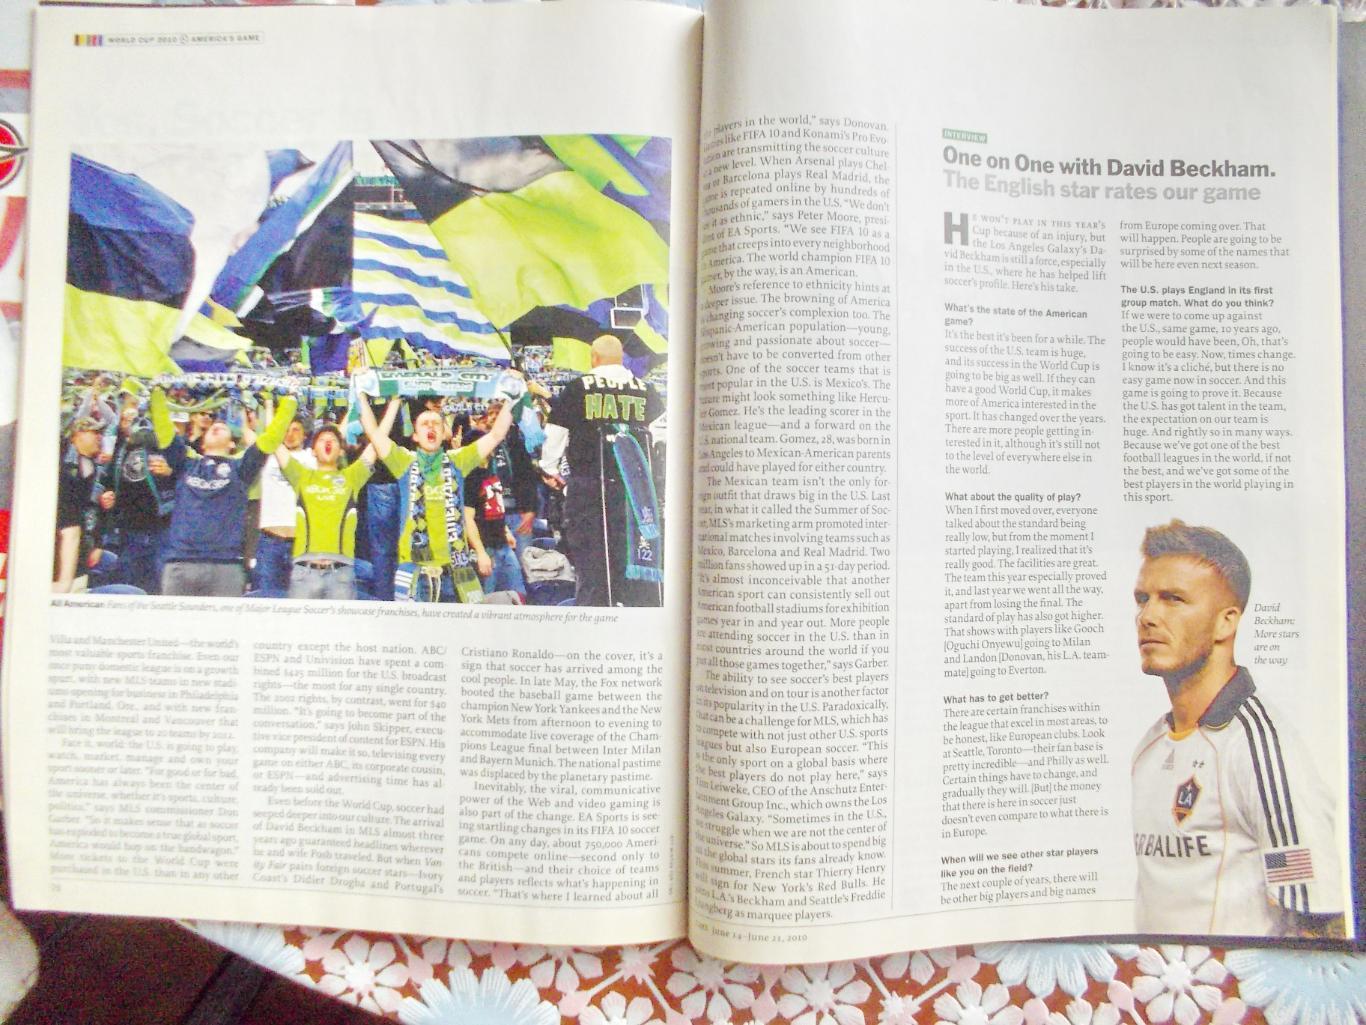 Журнал TIME. О ЧМ-2010 по футболу в Южной Африке. Июнь 2010 год. 3